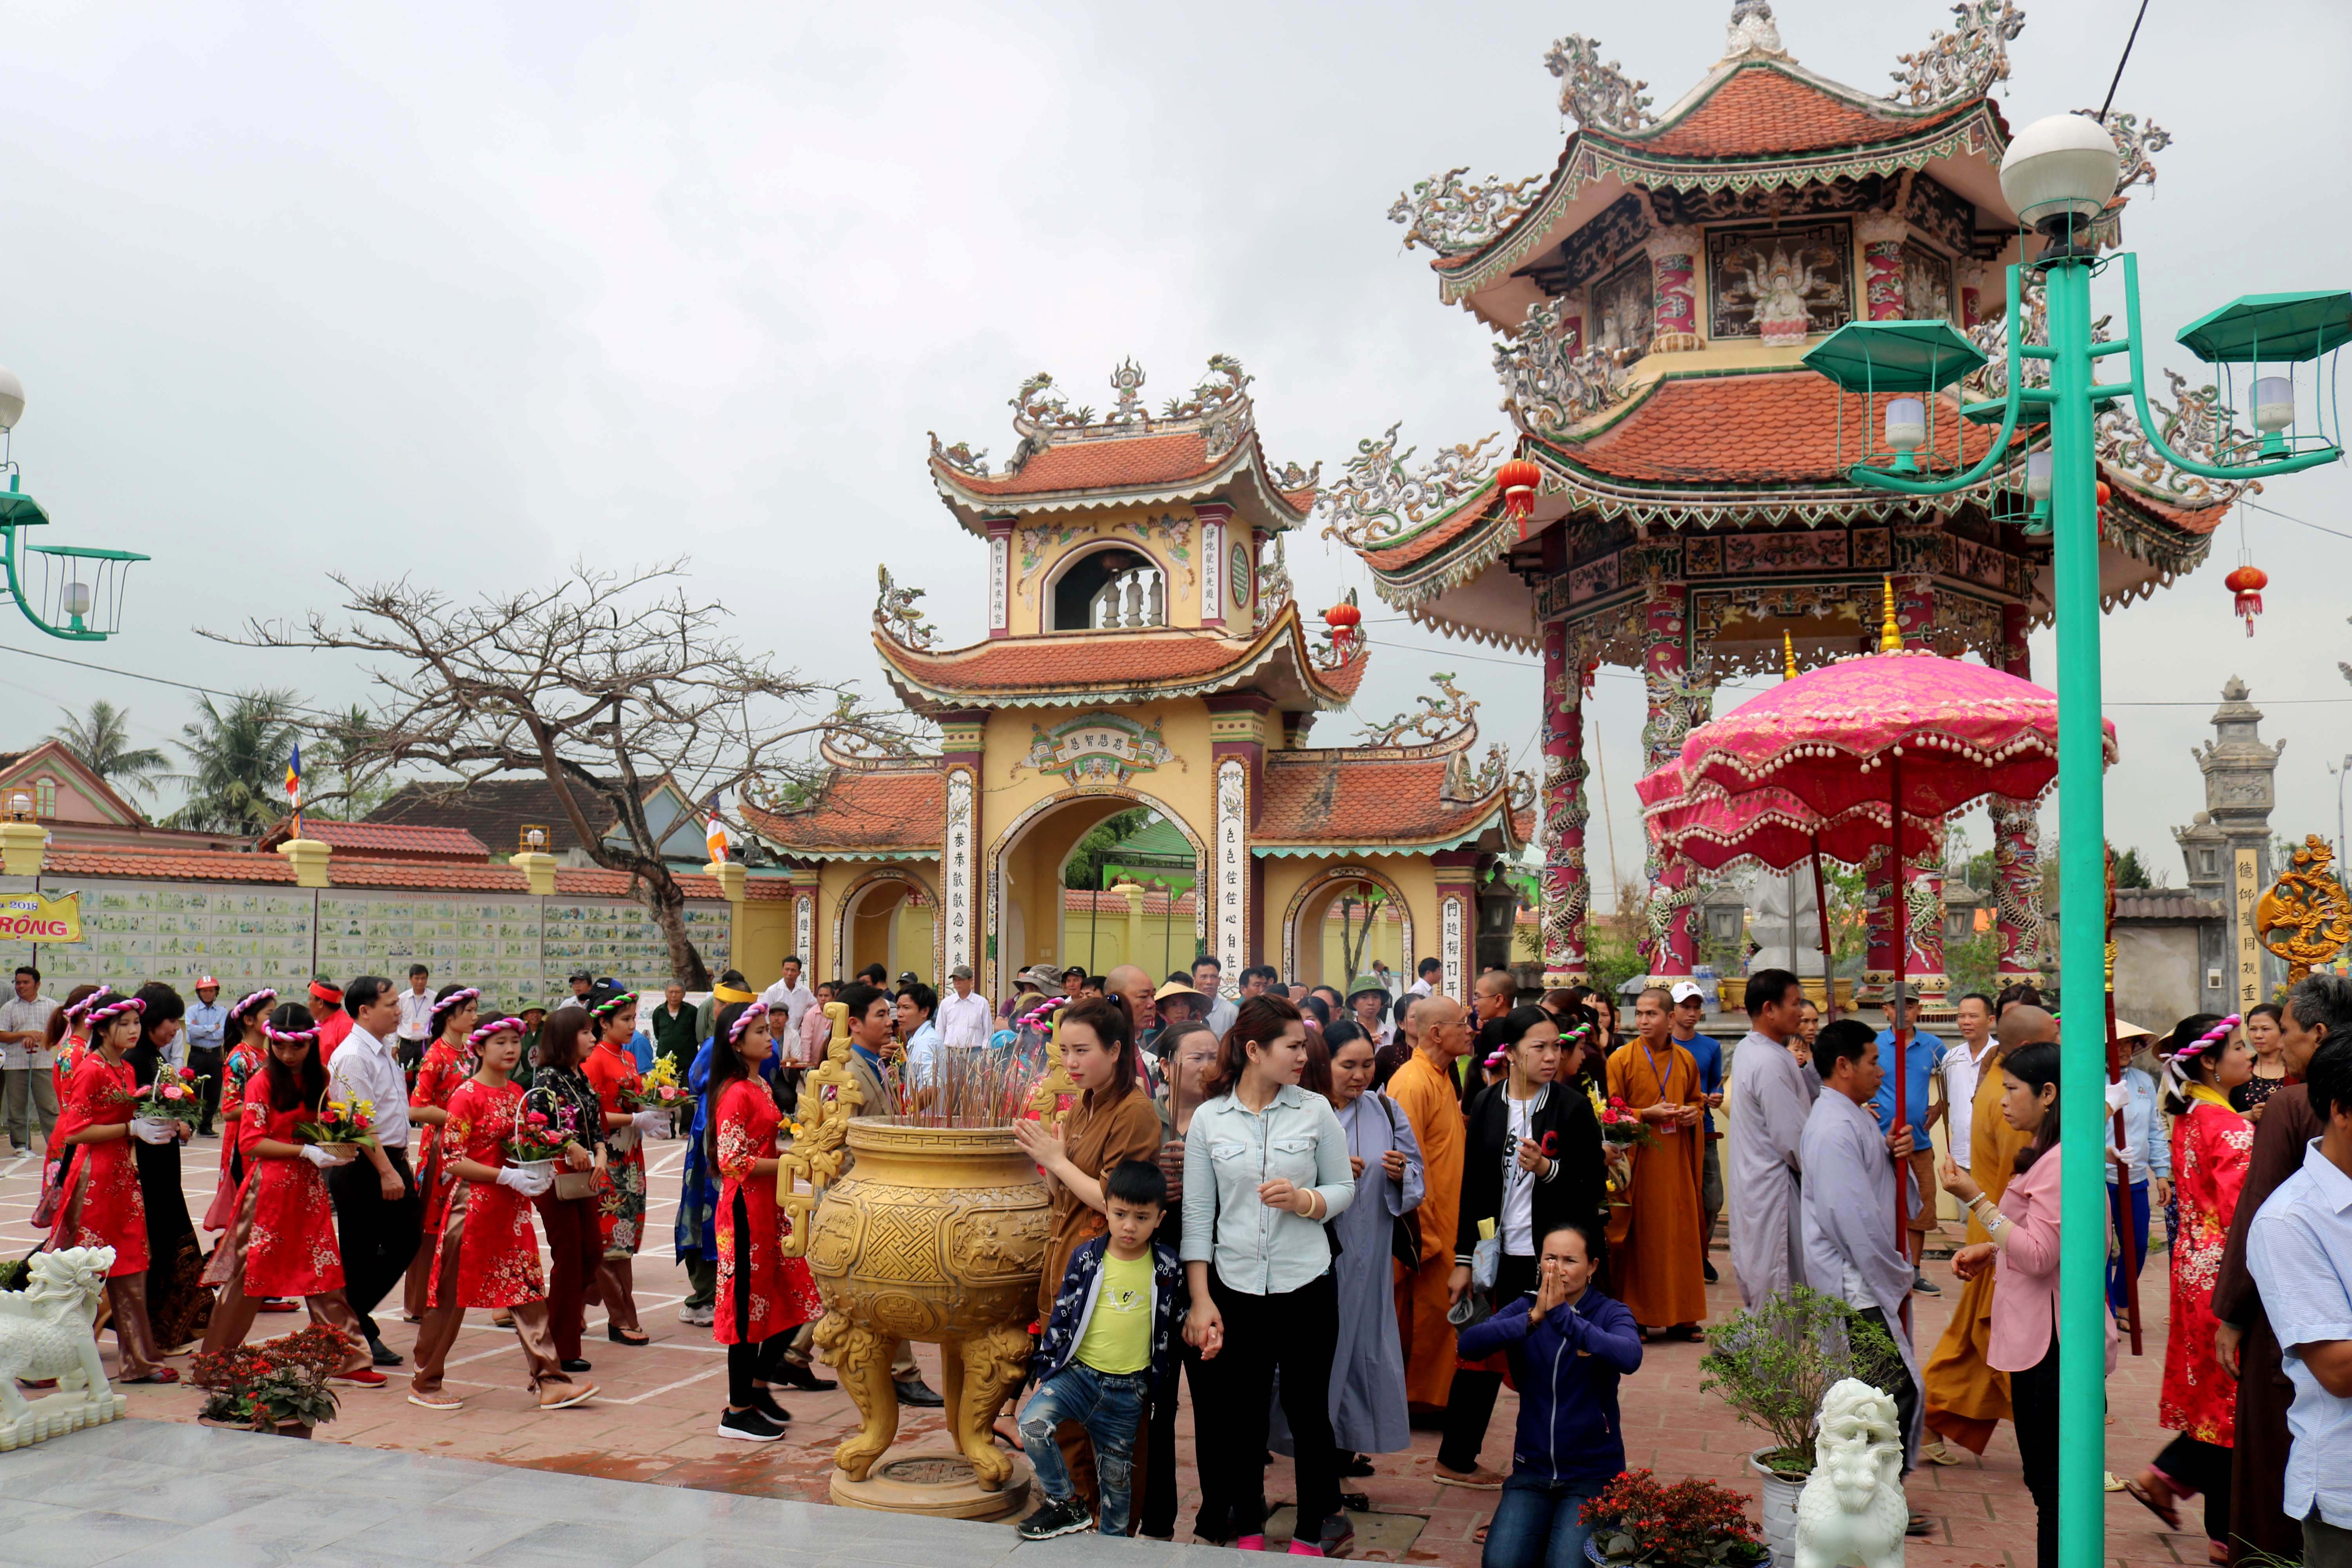 Những năm qua, chùa Gám đang từng bước được trùng tu tôn tạo uy nghi bề thế gắn liền với Lễ hội đền – chùa Gám được tổ chức hàng năm thu hút đông đảo du khách thập phương. 